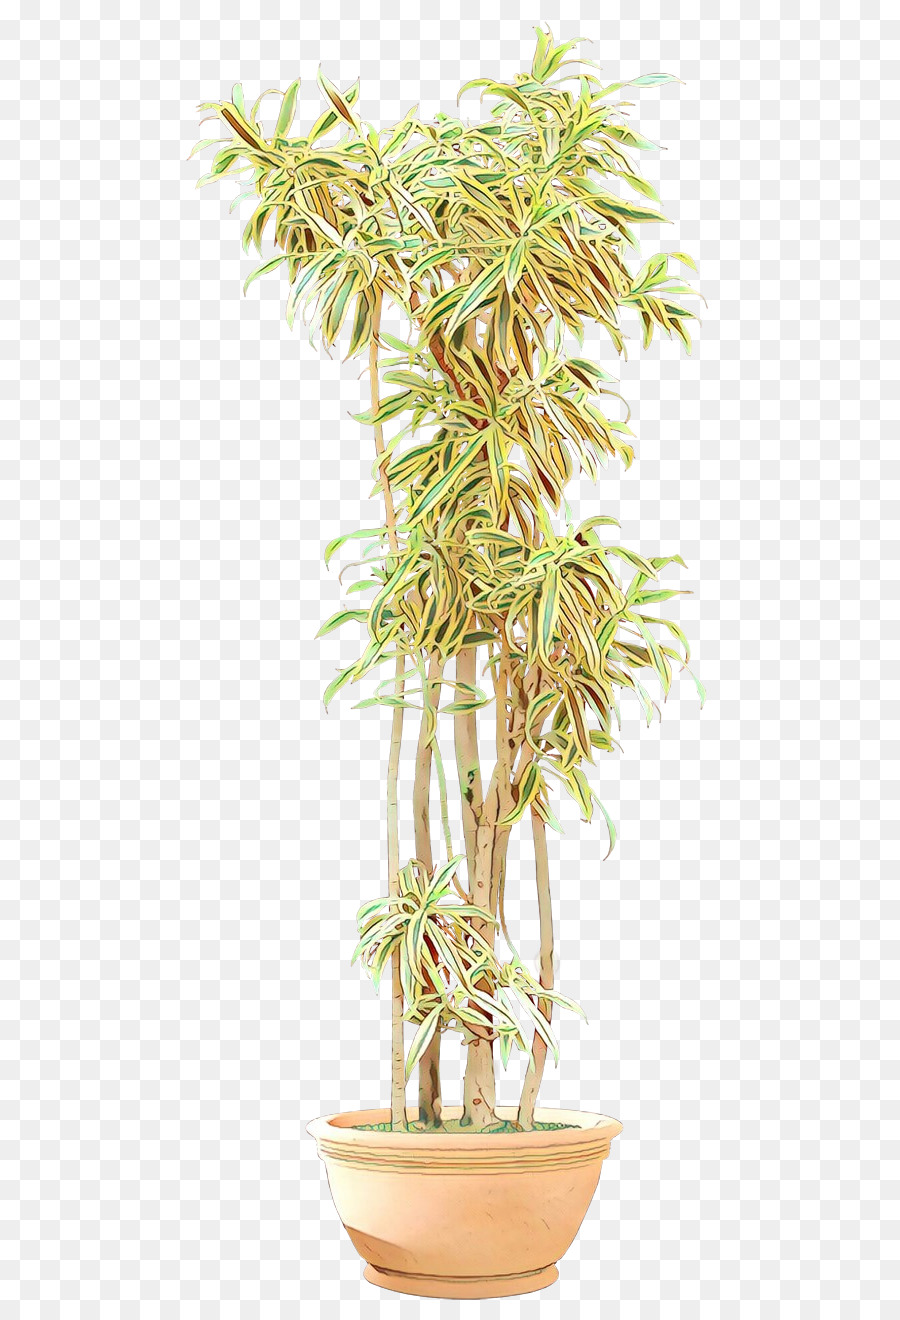 Blumentopf-Baumhauspflanze Arecales-Pflanzenstamm - 